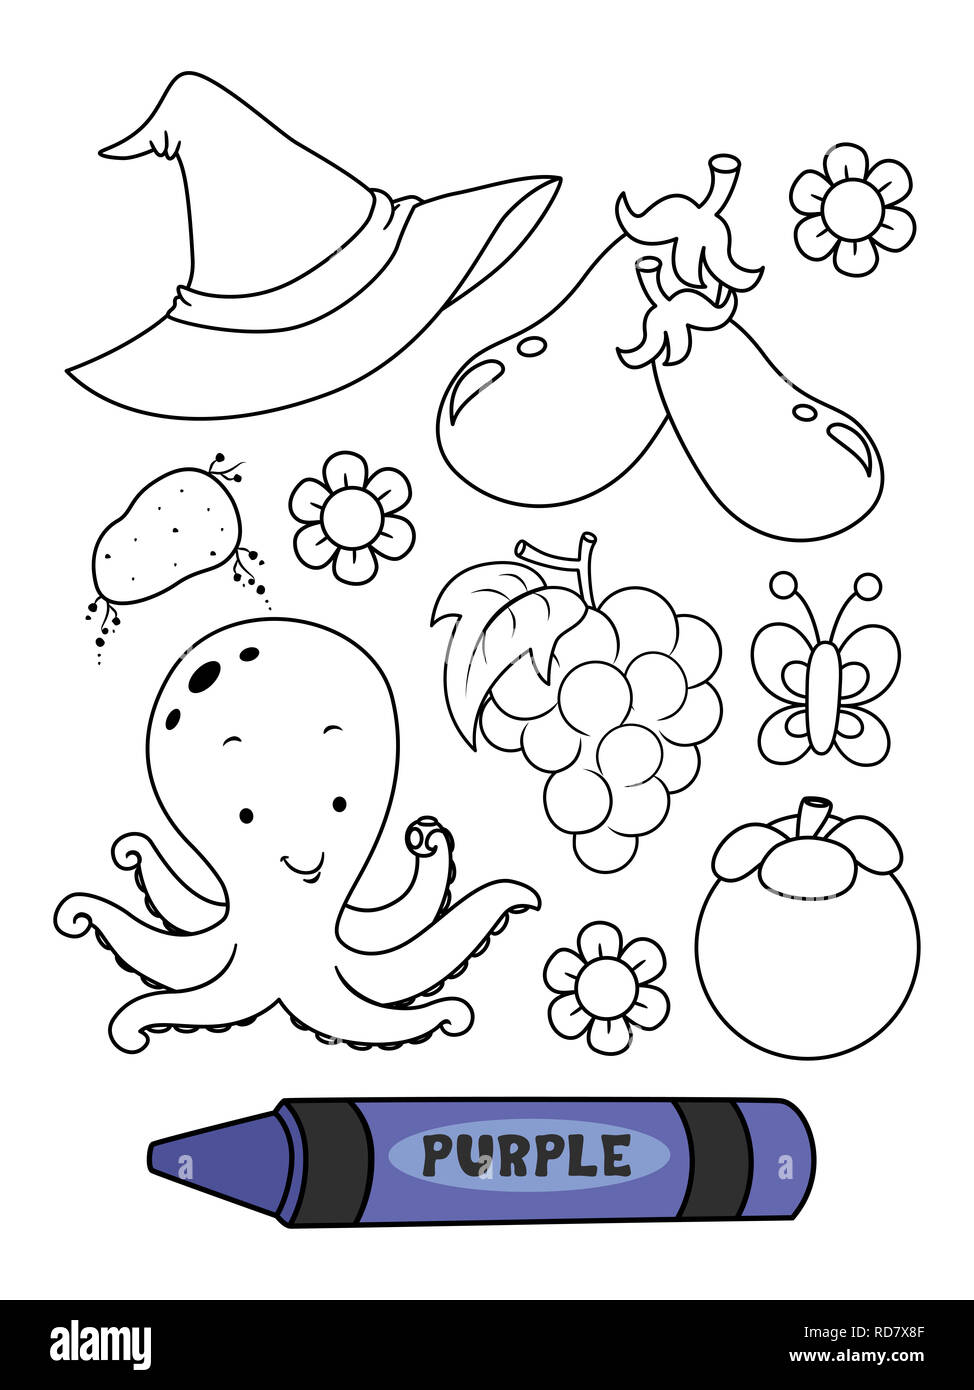 Ilustración de un lápiz de color púrpura con elementos de color morado en  una página para colorear Fotografía de stock - Alamy